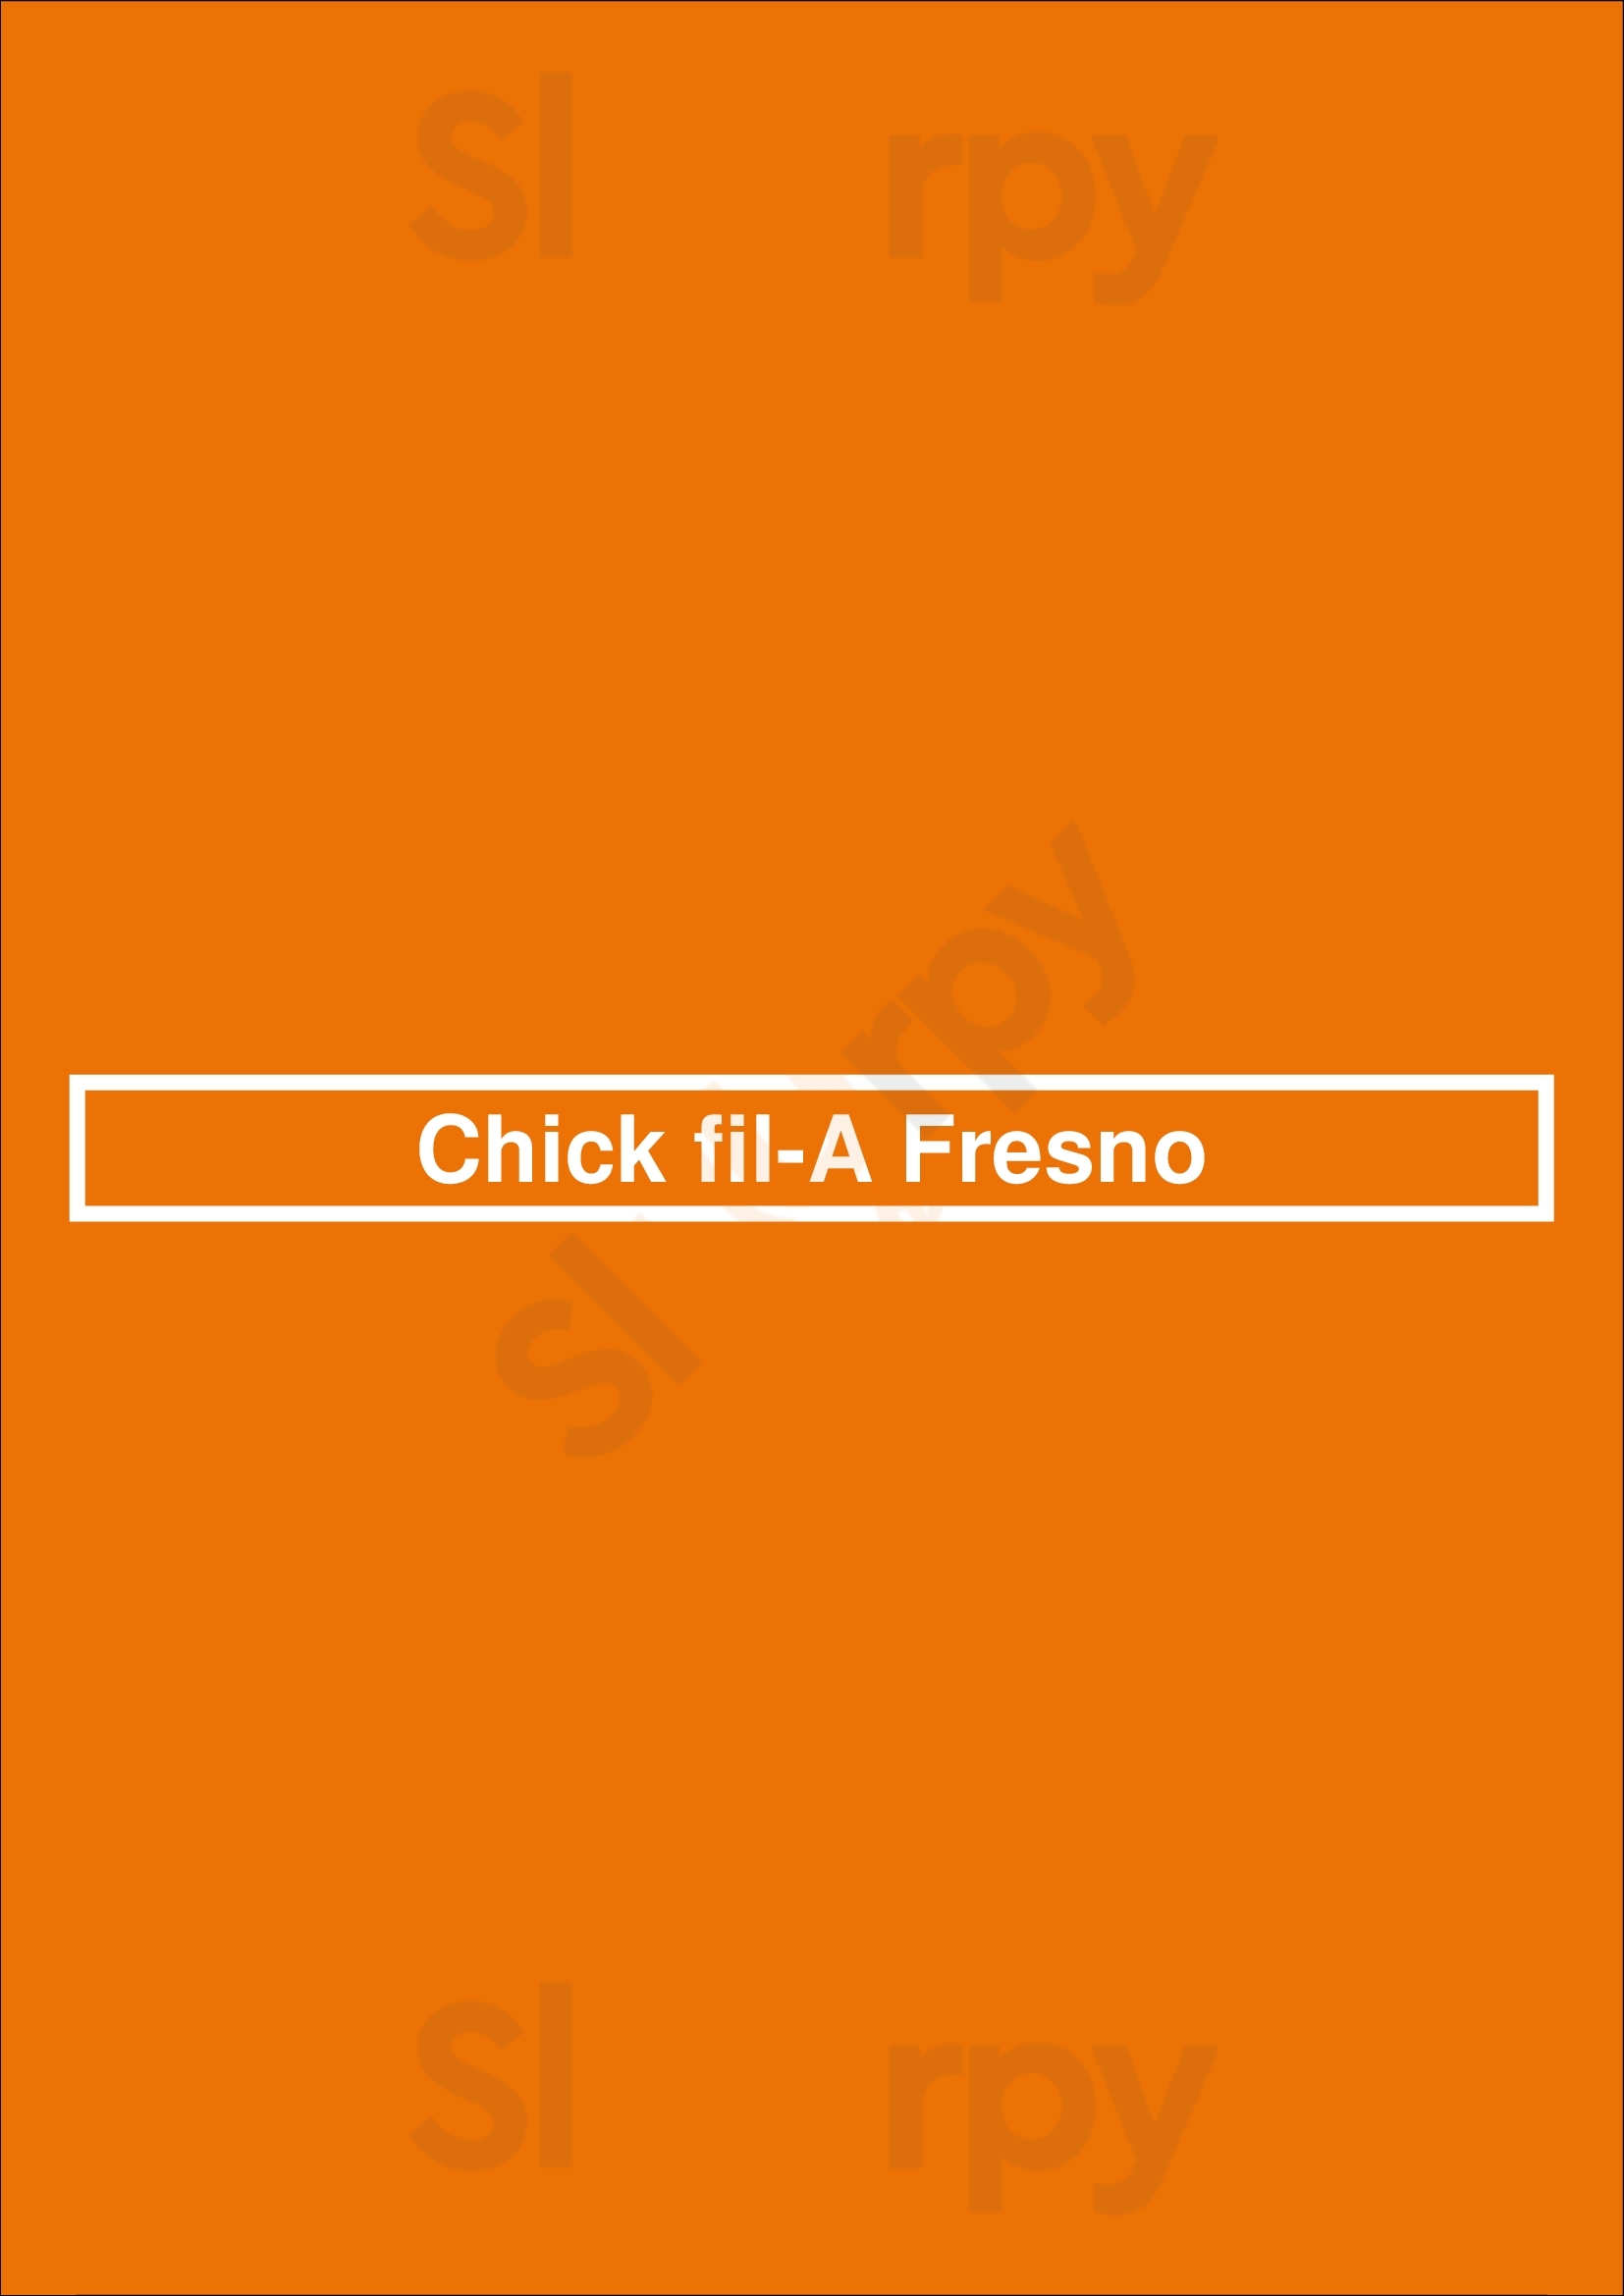 Chick-fil-a Fresno Menu - 1